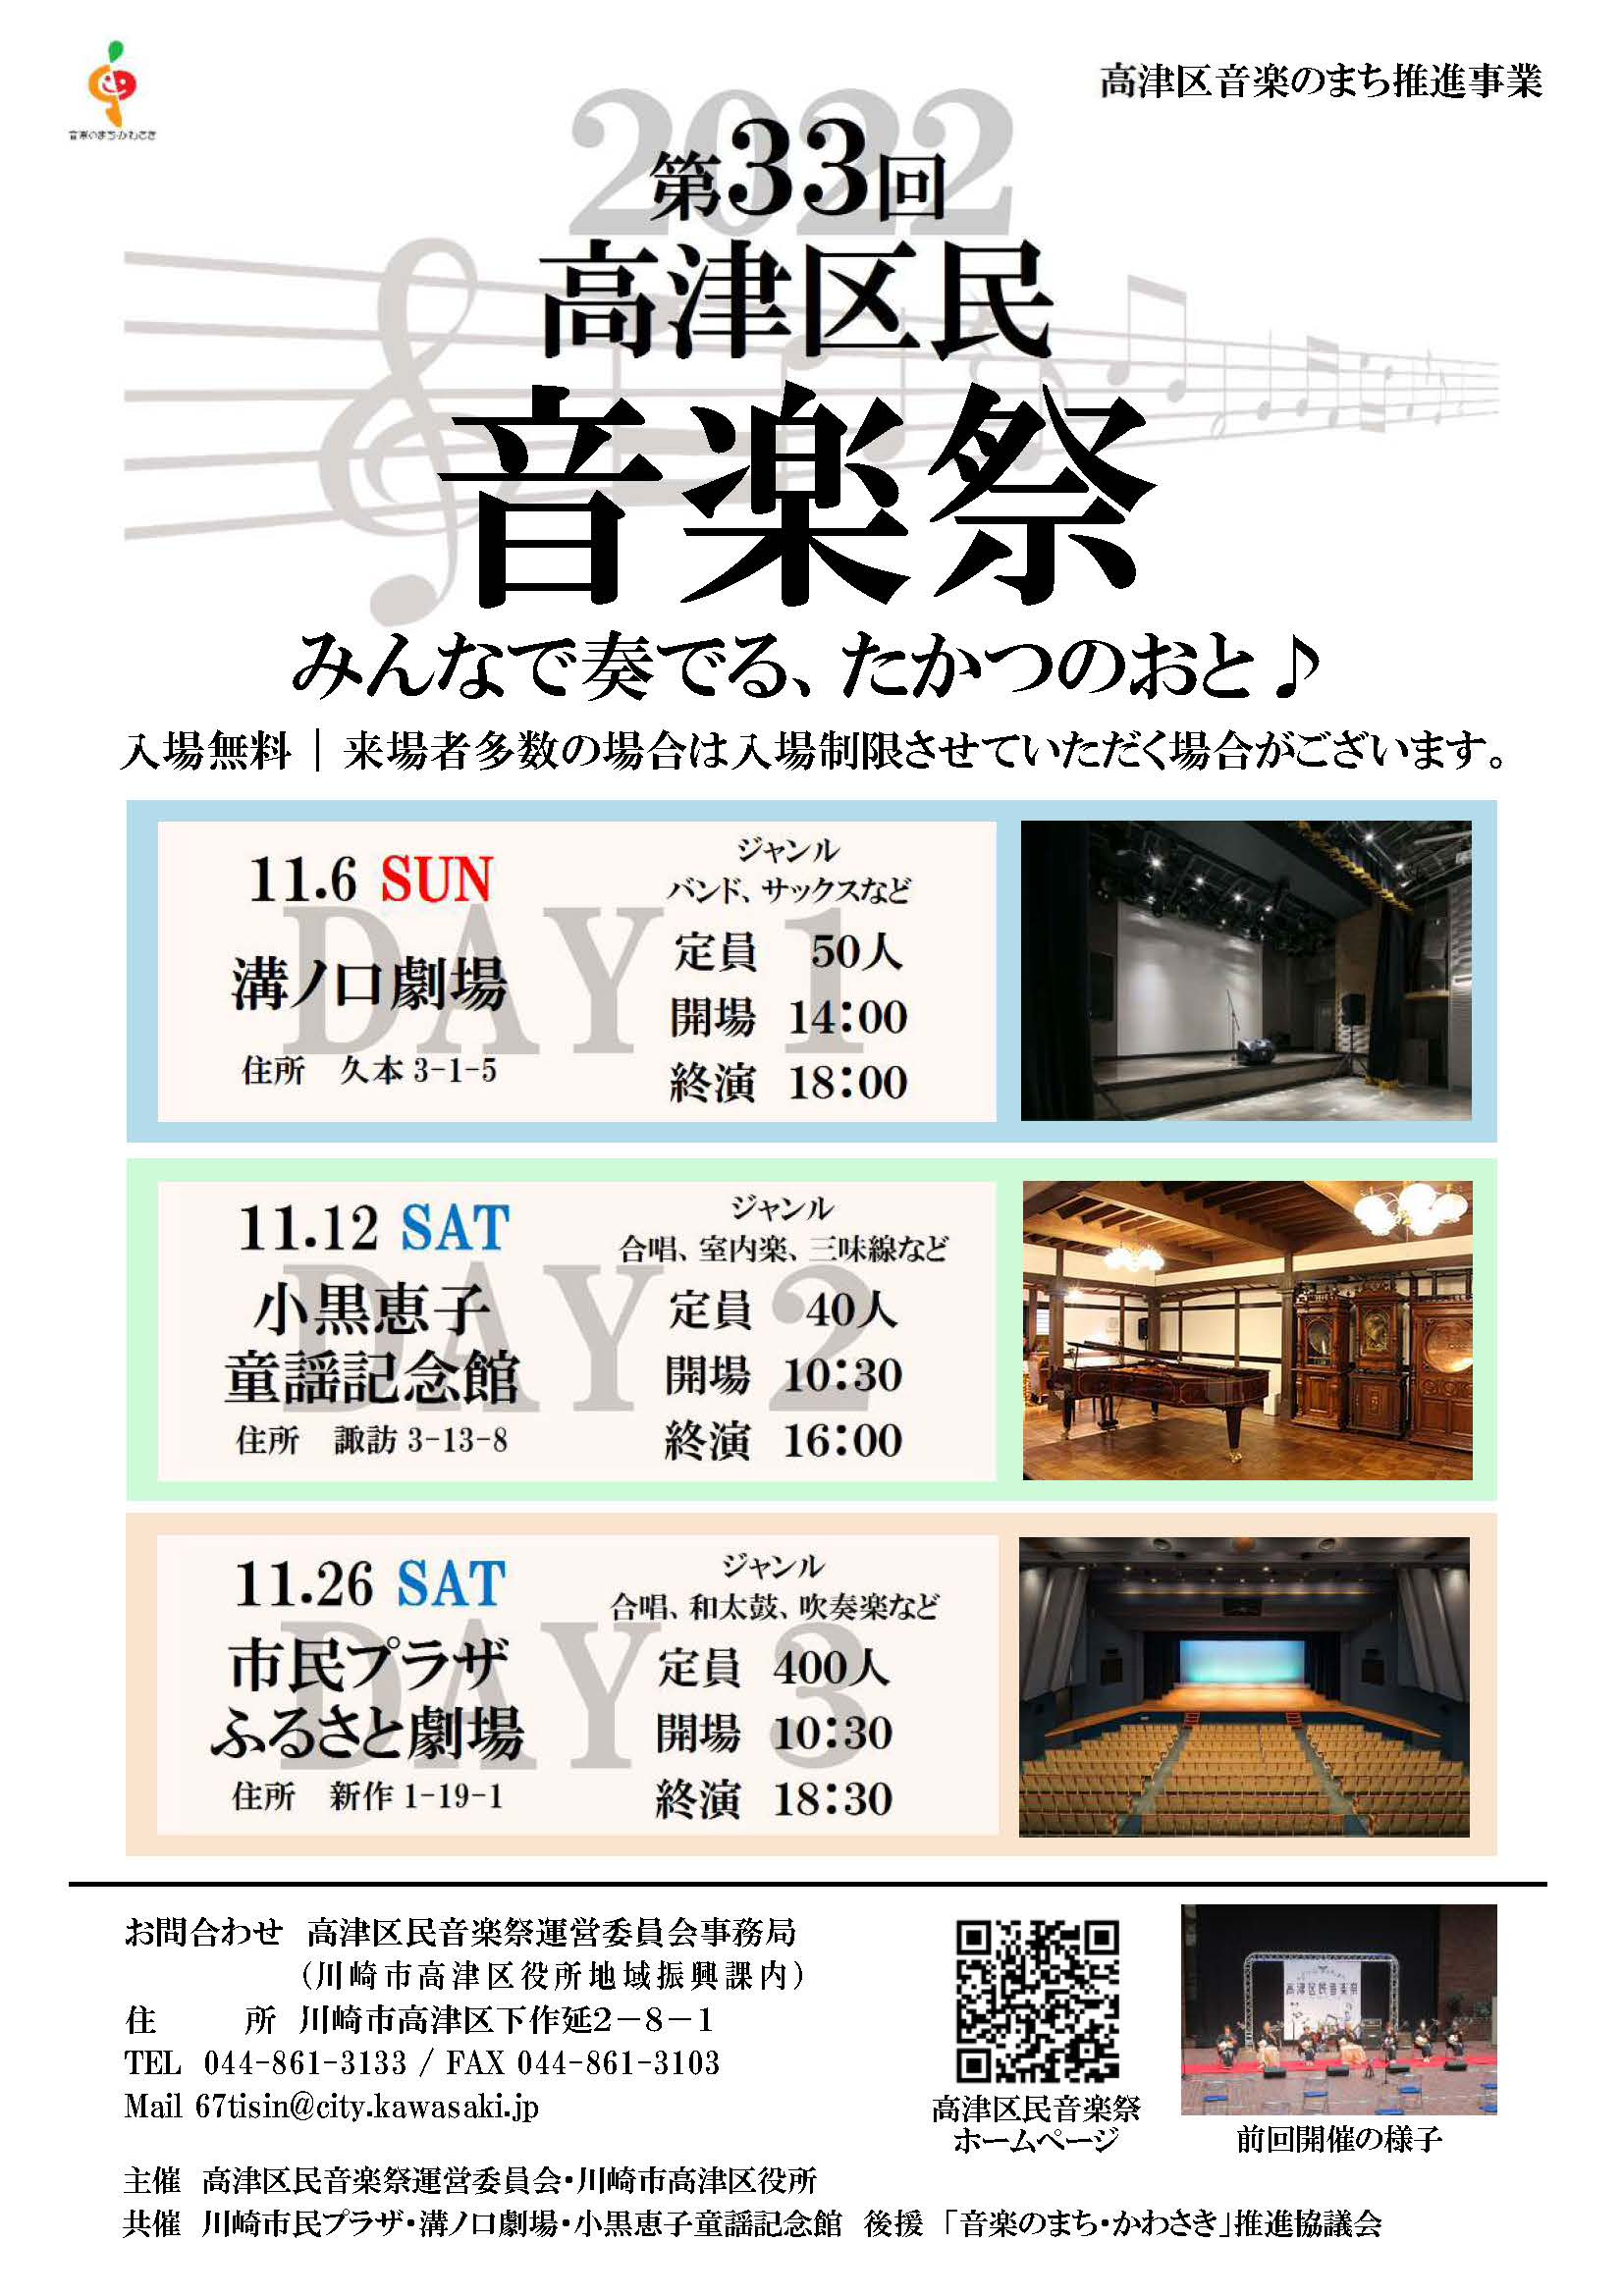 【2022年11月26日】第33回 高津区民音楽祭